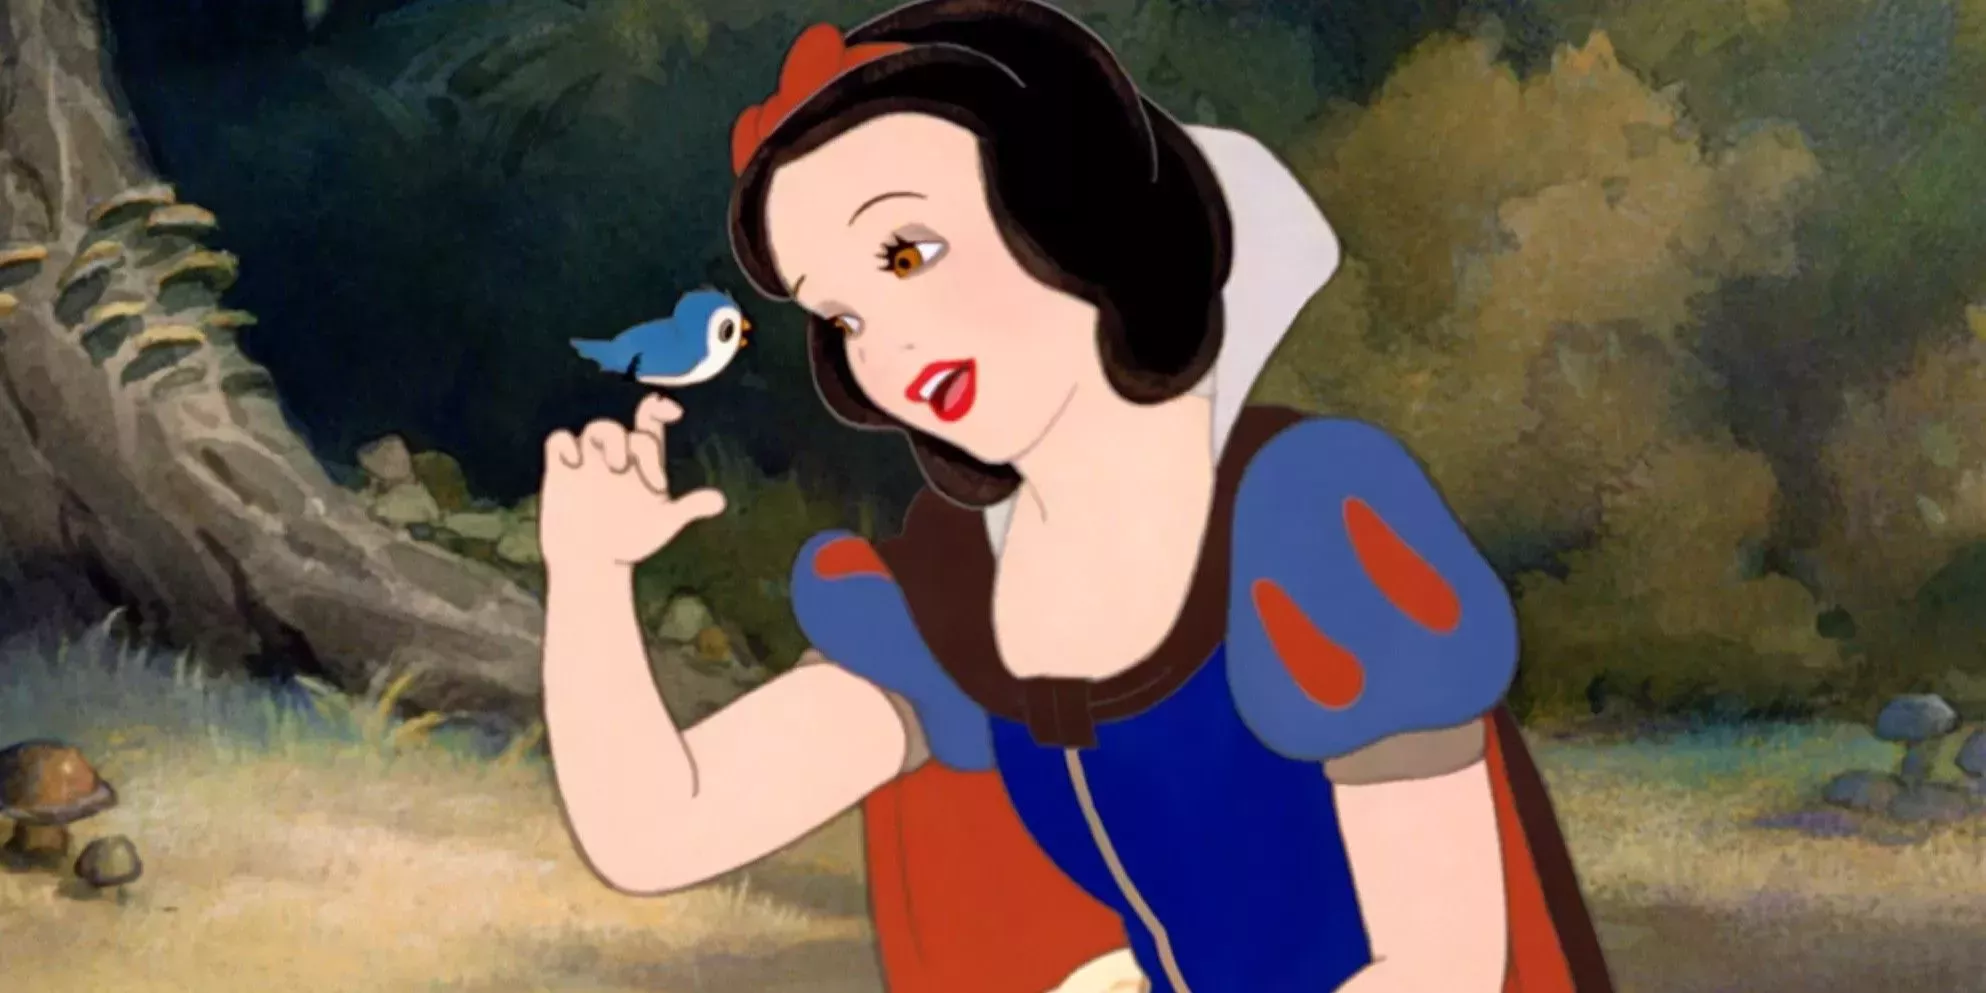 Jabeth Wilson dejar Calor Las 10 princesas Disney que menos gustan, clasificadas | Cultture